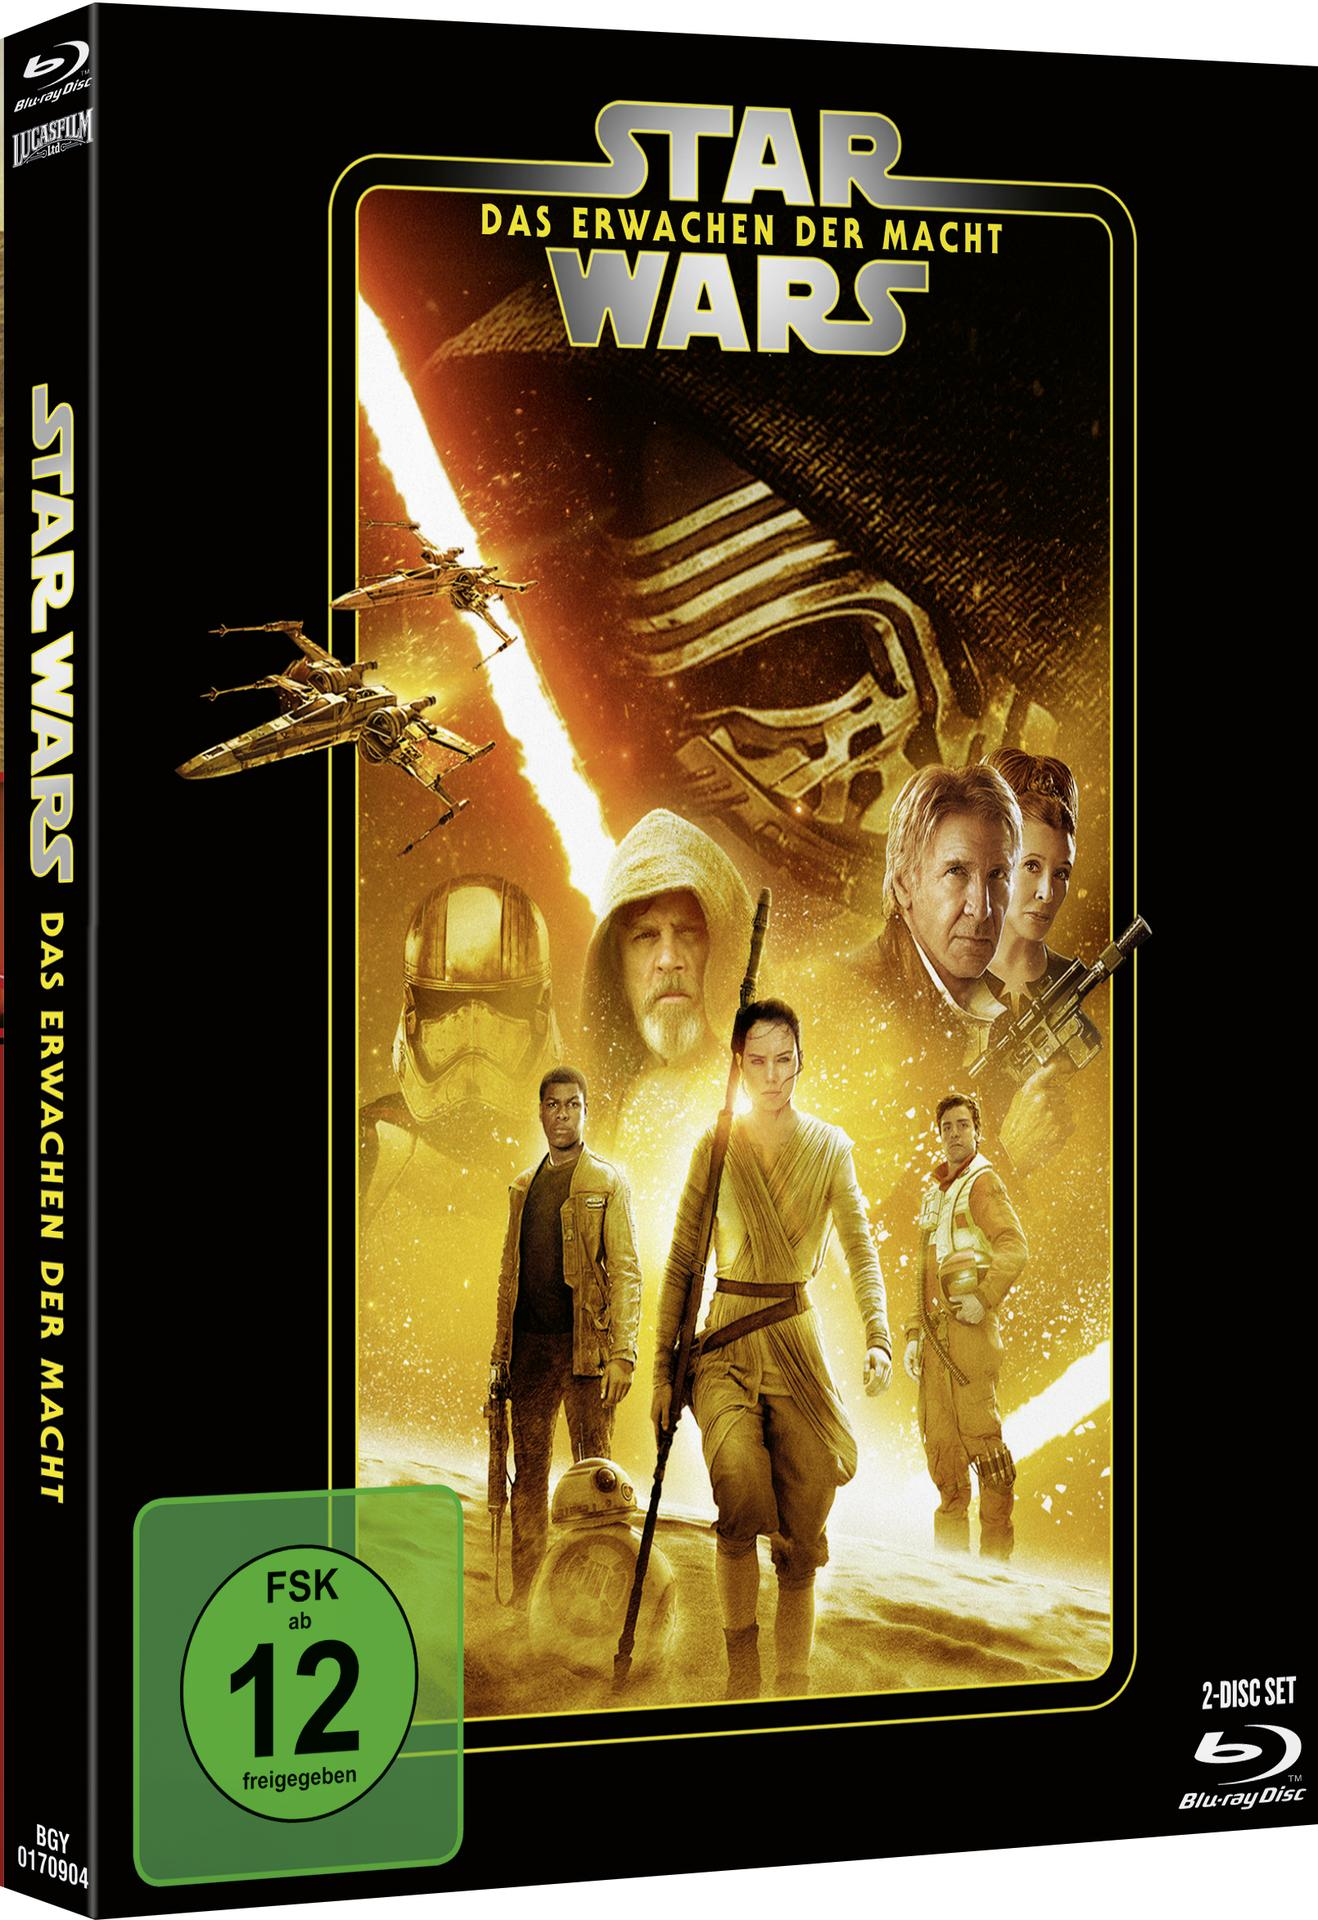 Wars: Blu-ray Macht der Erwachen Das Star